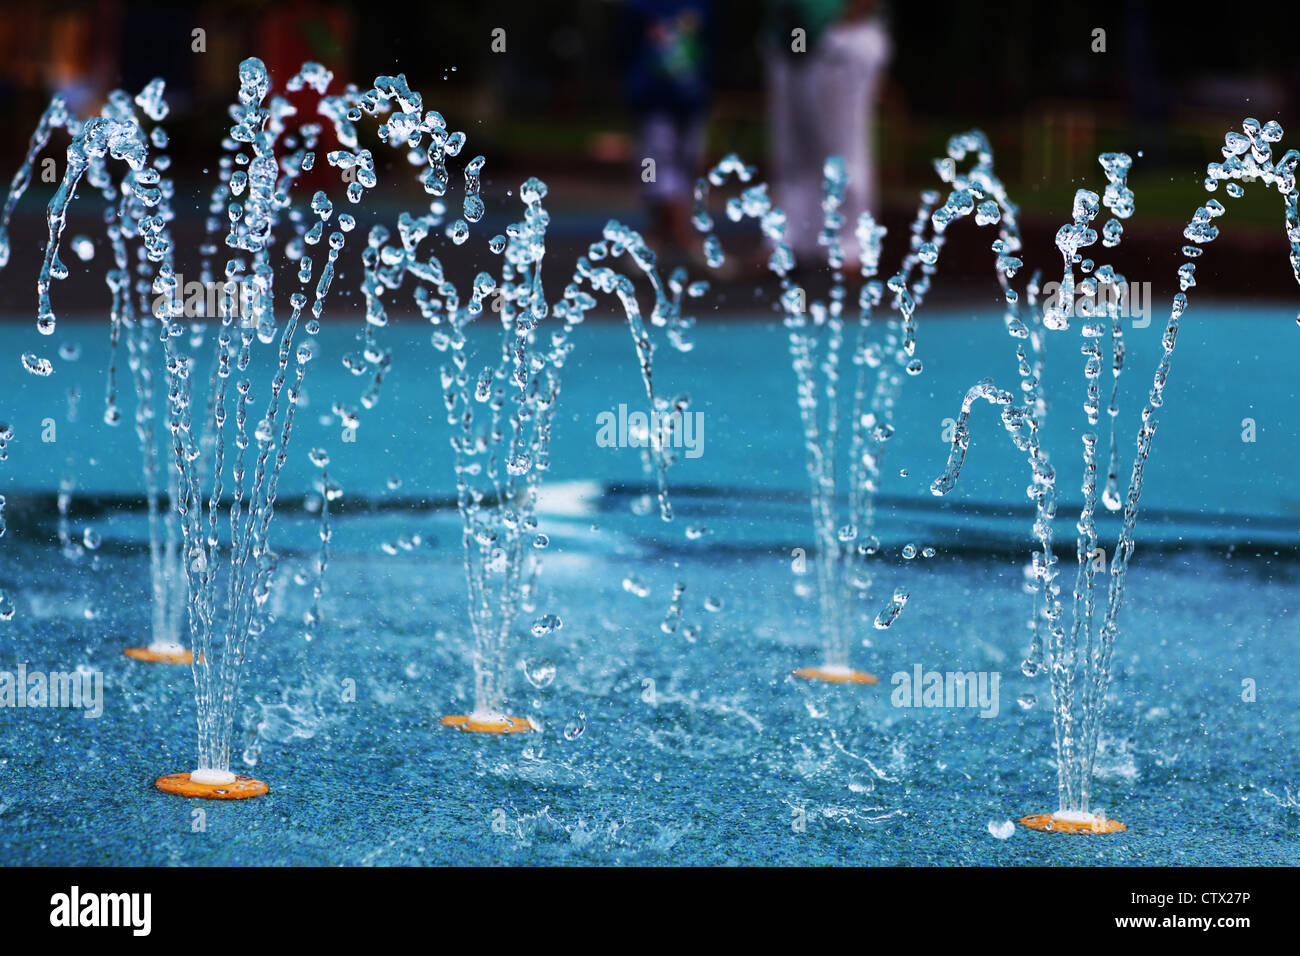 Les fontaines d'eau dans un parc de jeu Banque D'Images